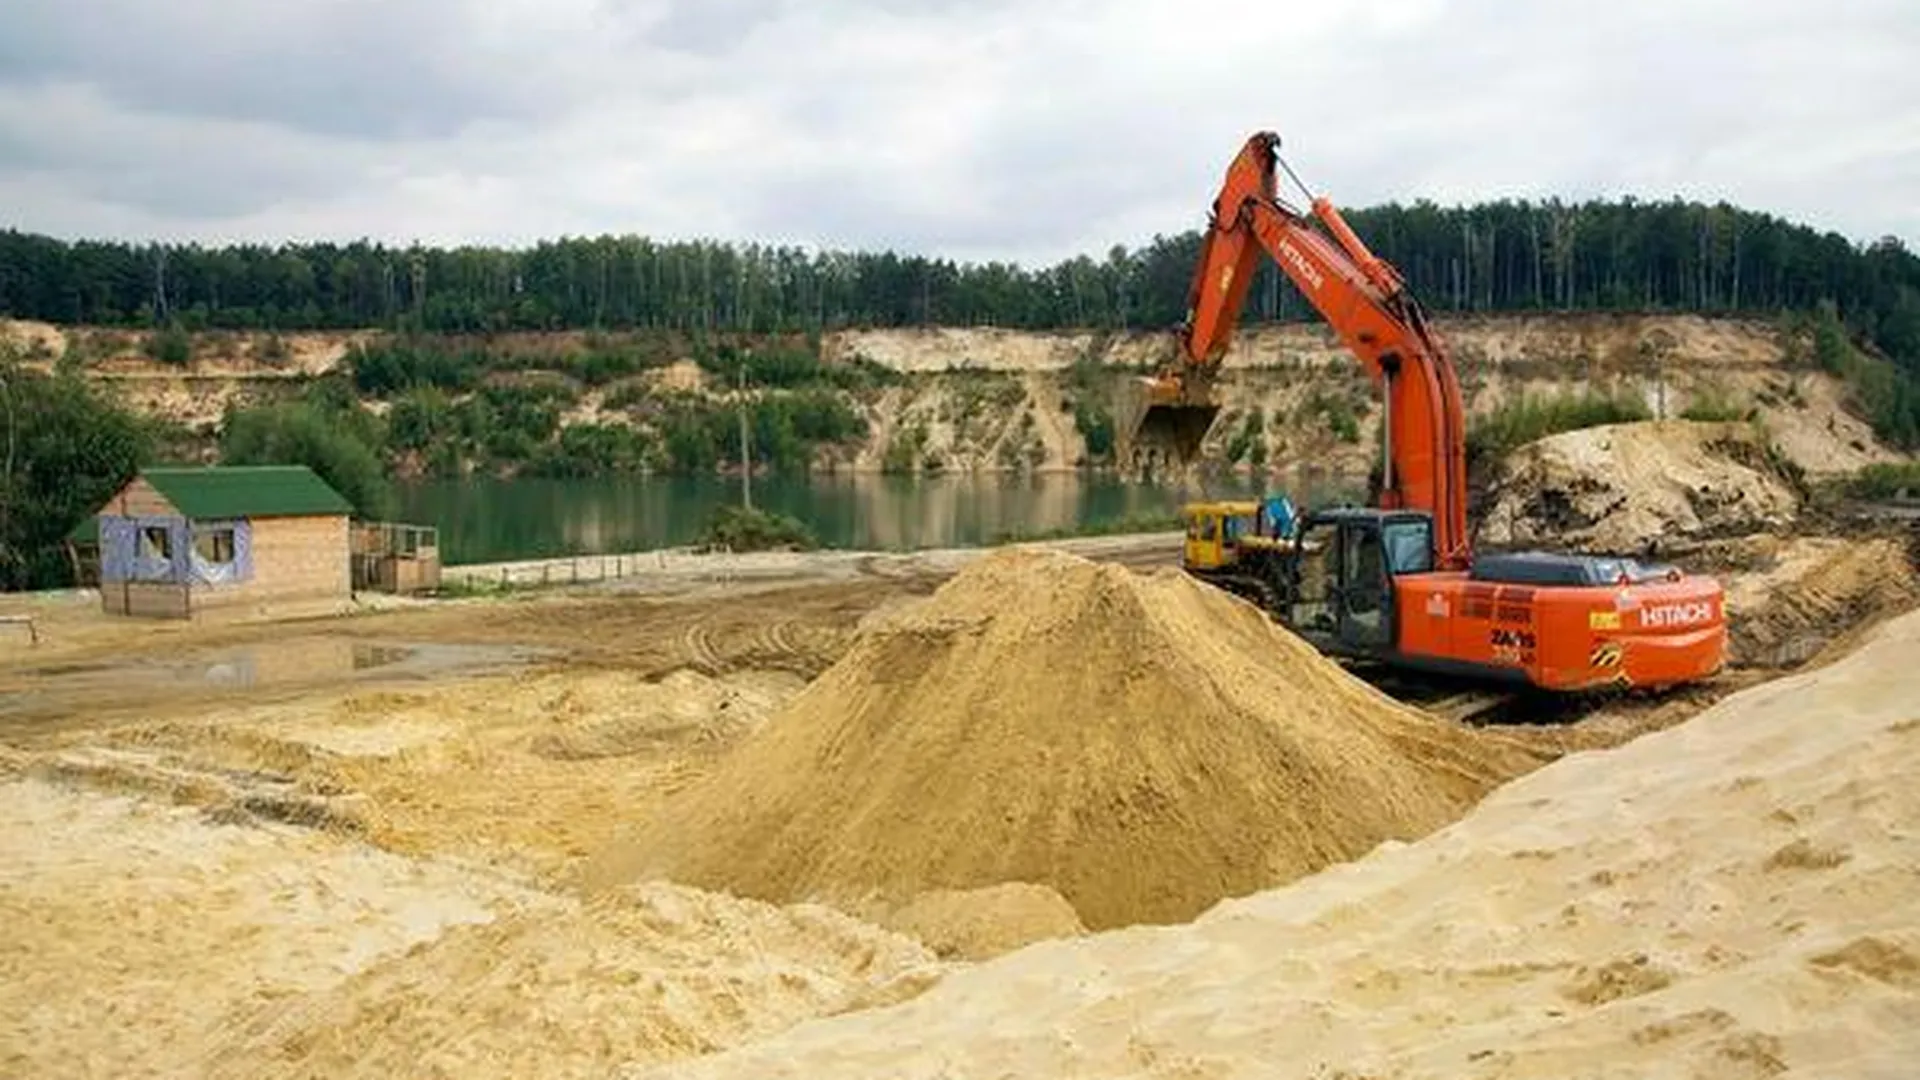 Песок незаконно добывали в рыбном хозяйстве Коломенского района